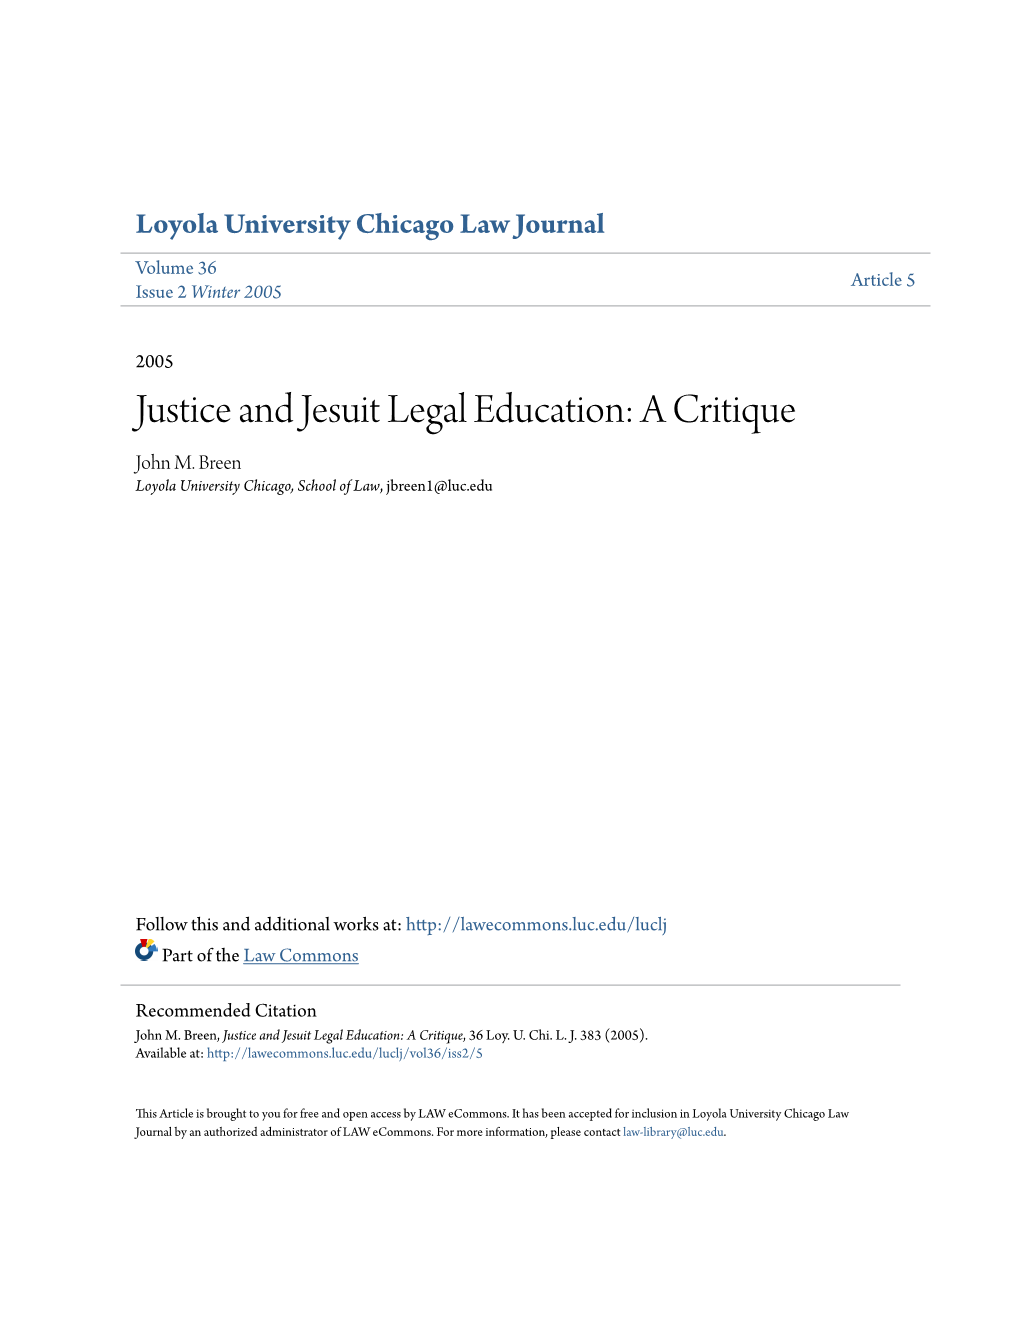 Justice and Jesuit Legal Education: a Critique John M